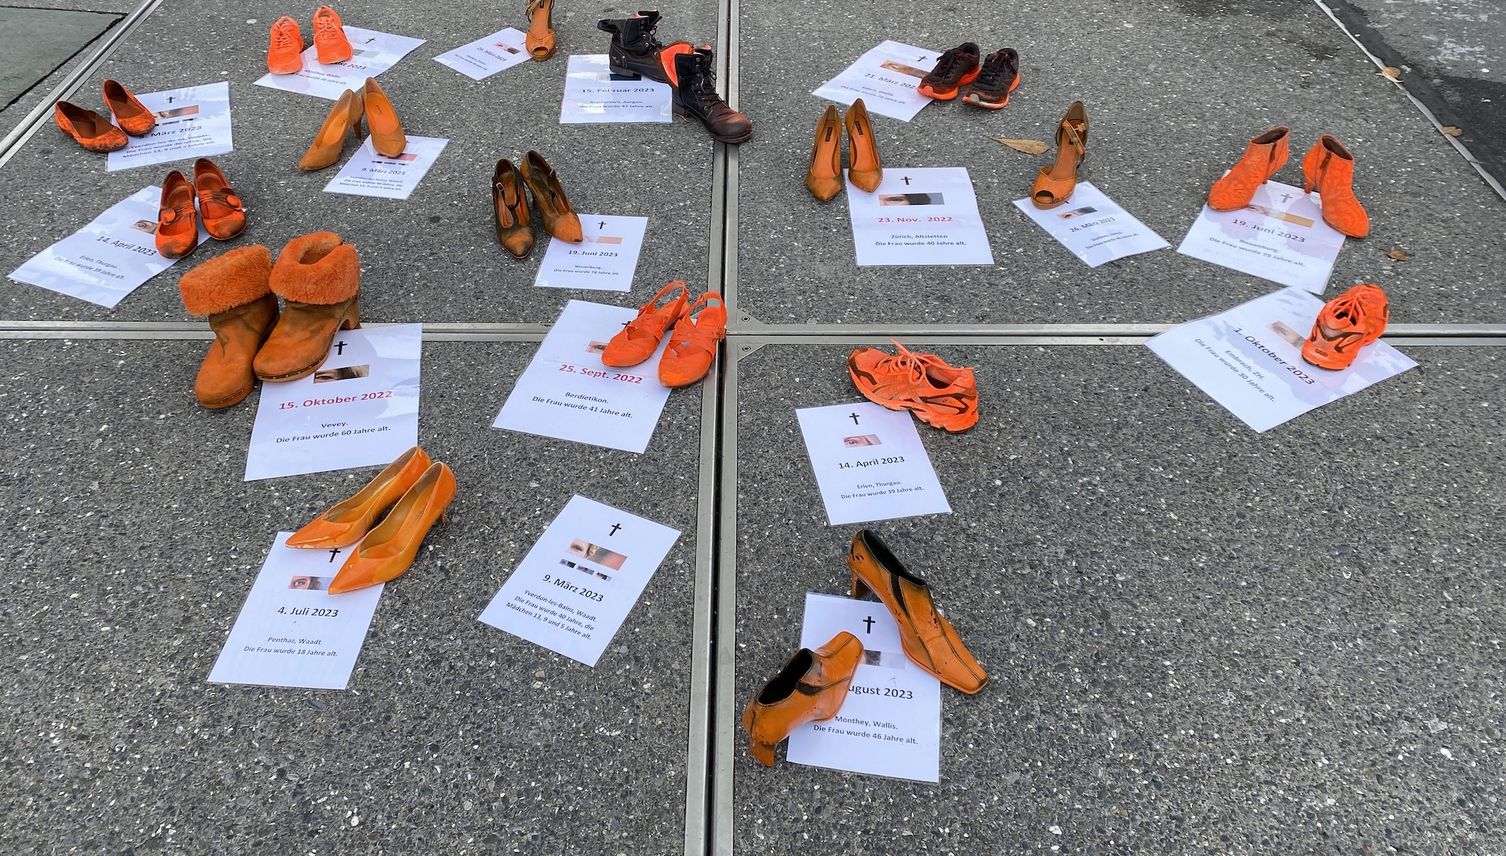 Darum standen orange Schuhe beim Luzerner Bahnhofsplatz